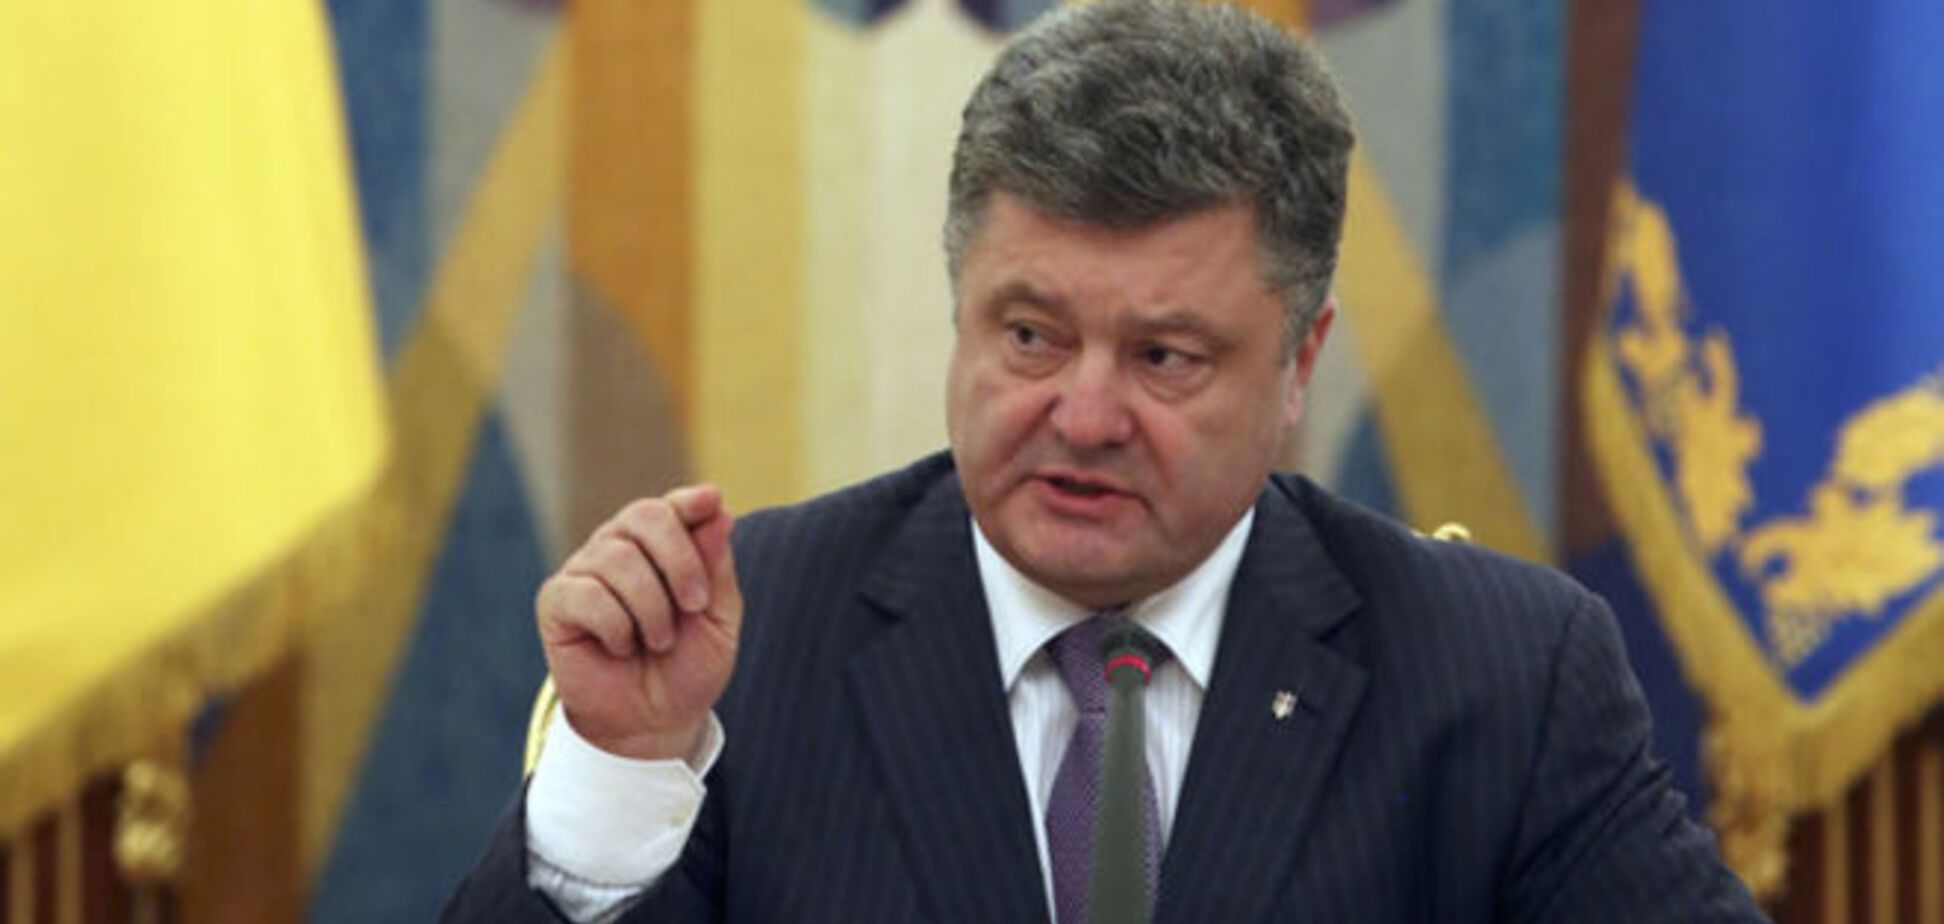 Порошенко уверен в освобождении Савченко и всех заложников